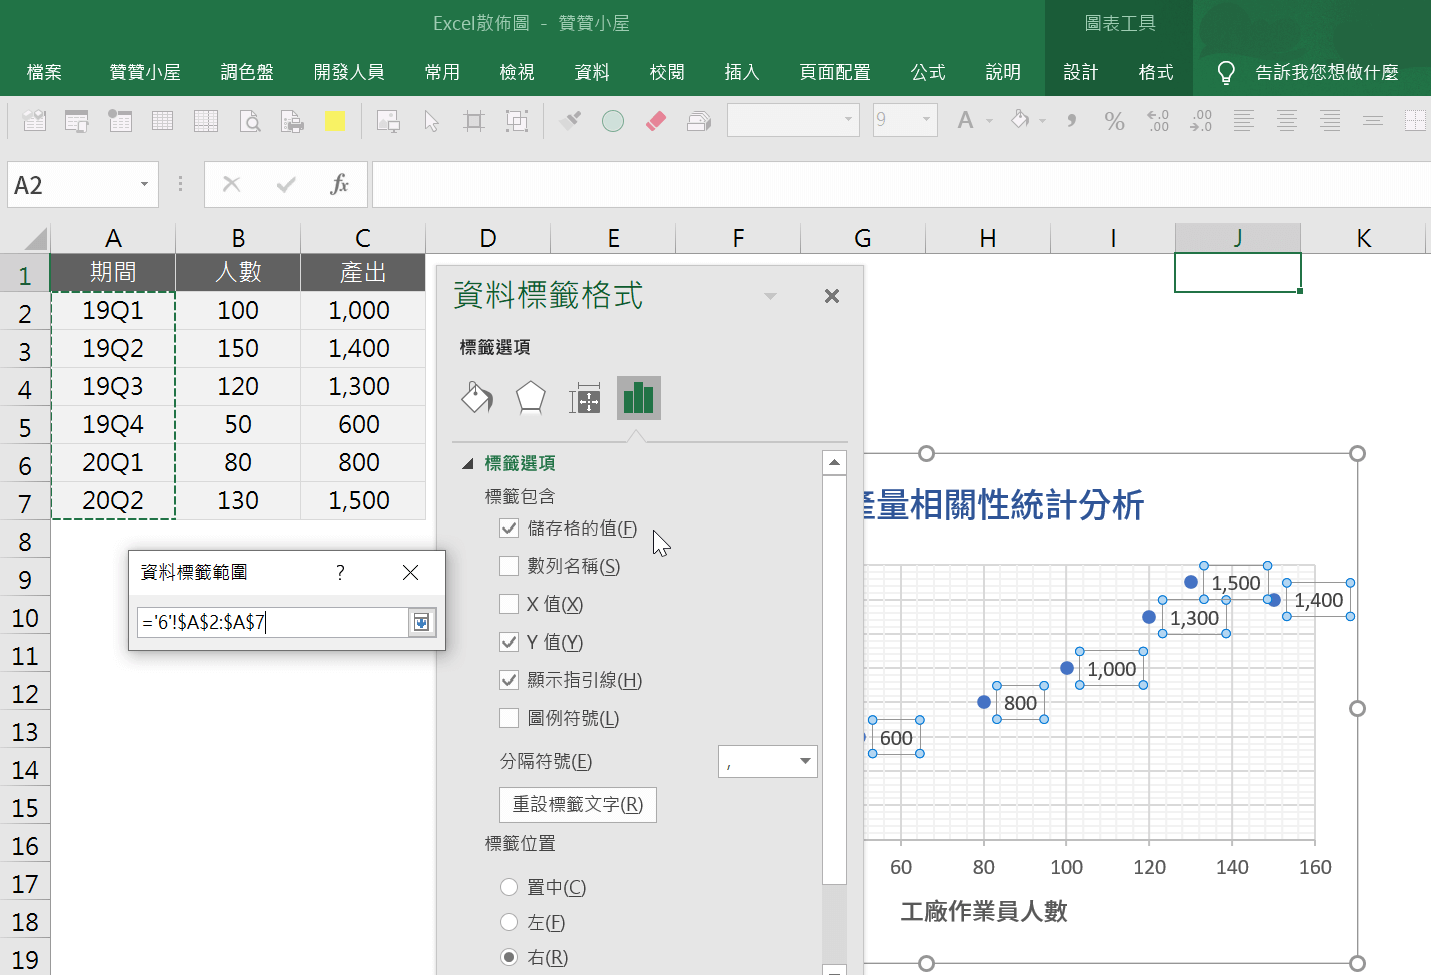 Excel散佈圖輕鬆分析工廠人數產量的統計學相關性 13